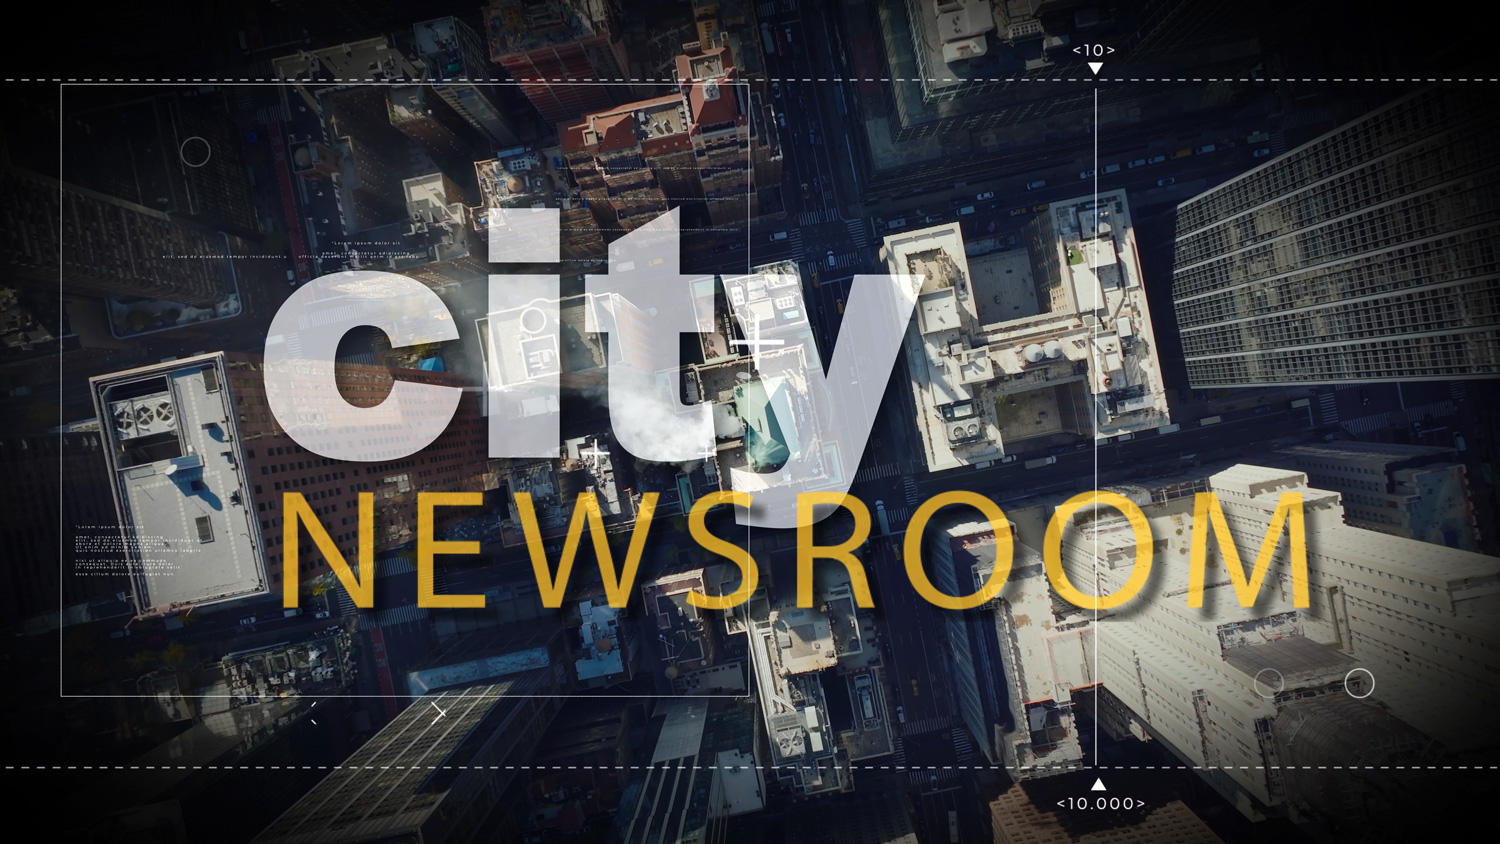 CITY NEWSROOM